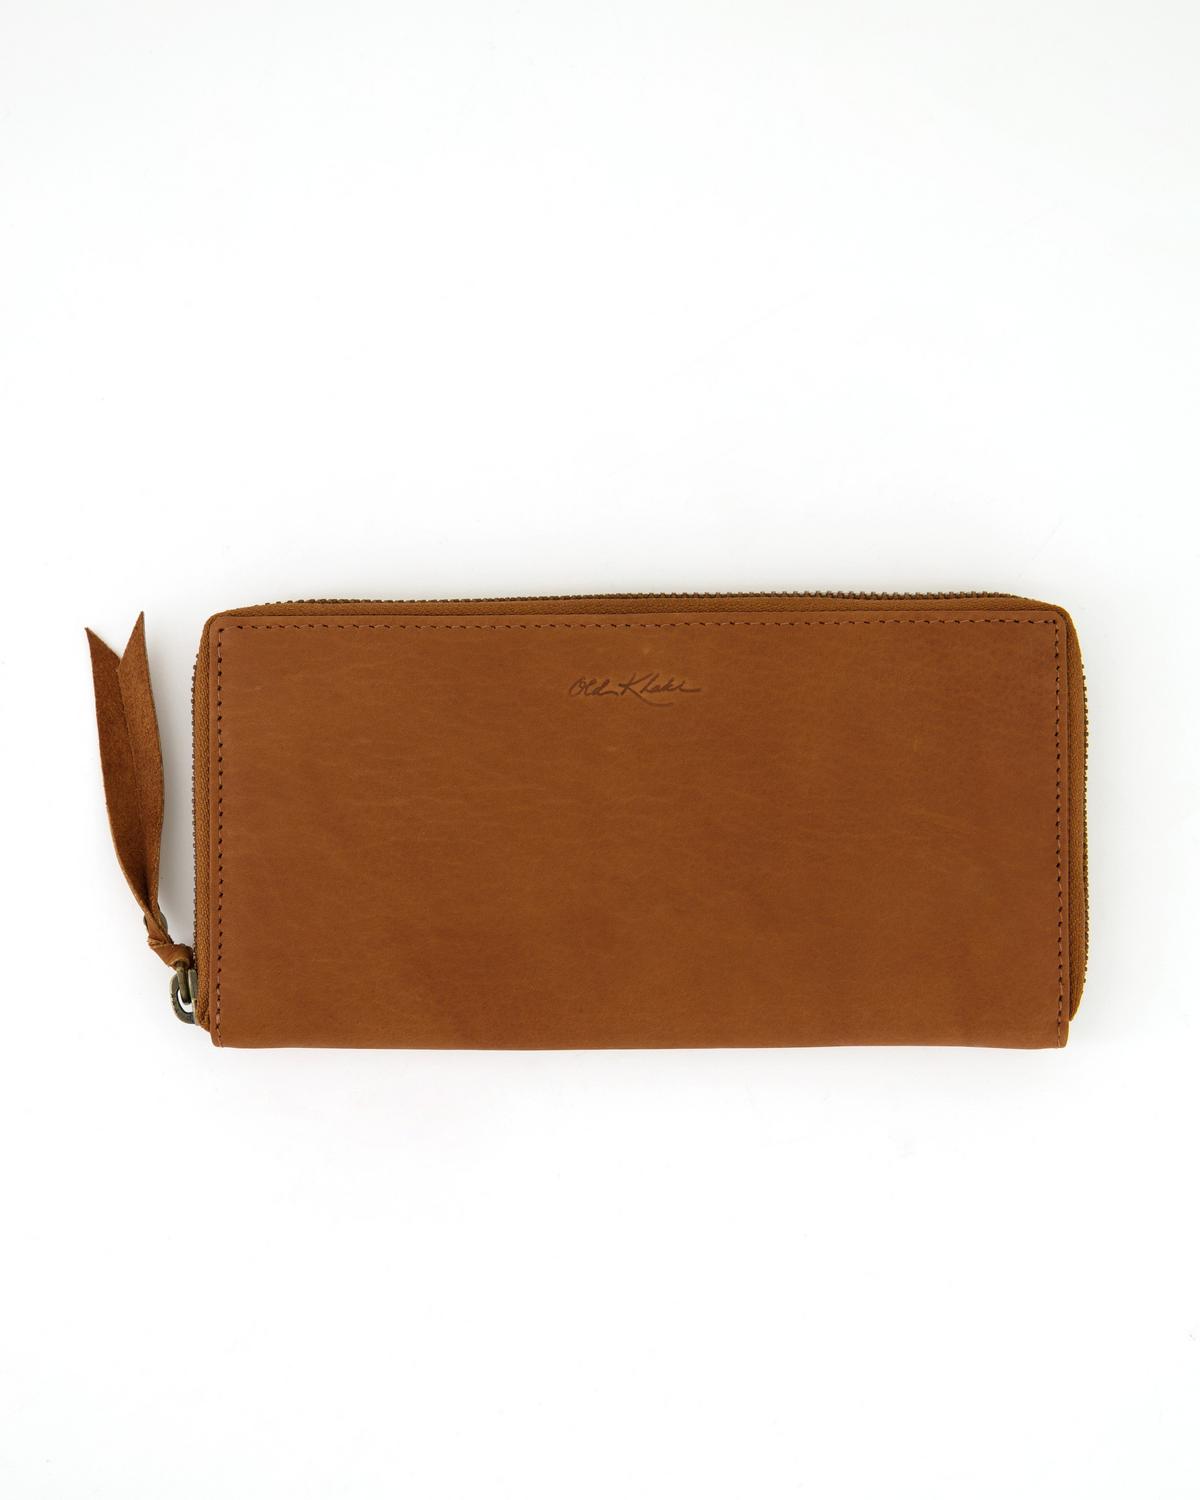 Old Khaki Women's Keira Leather Wallet -  Tan/Tan